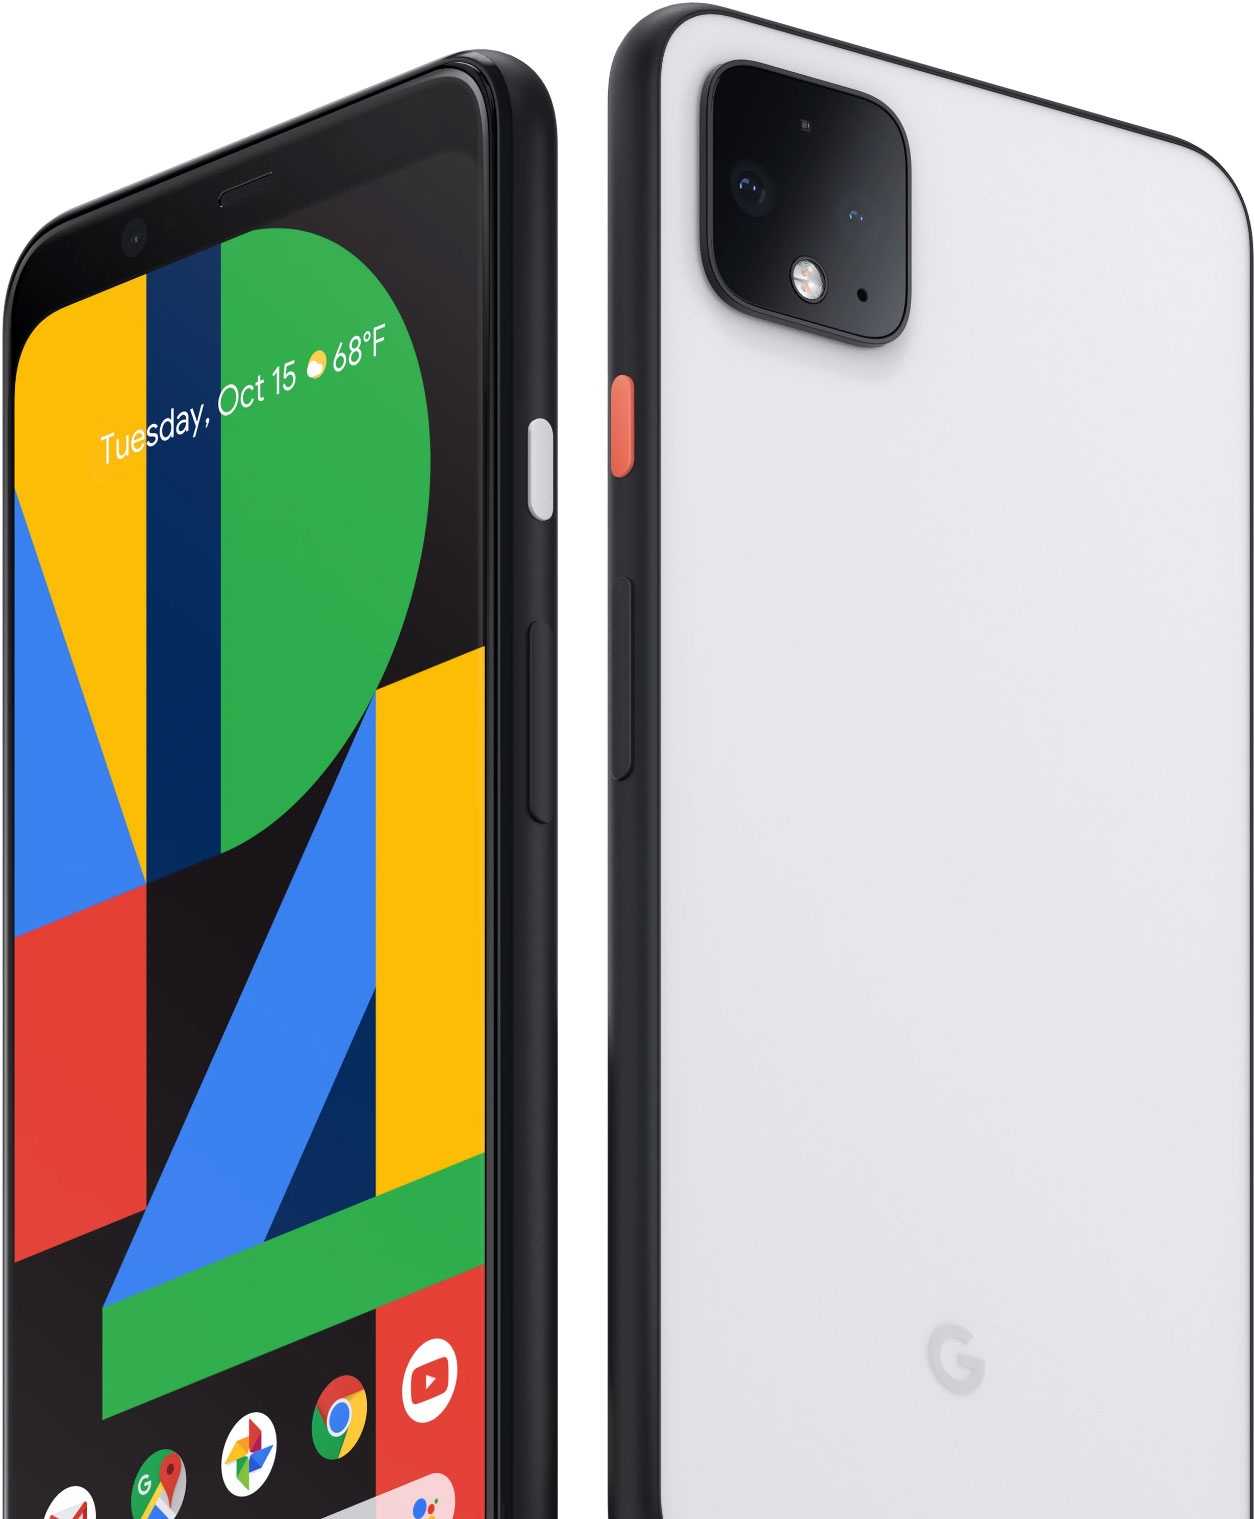 Смартфон google pixel 3 xl — достоинства и недостатки